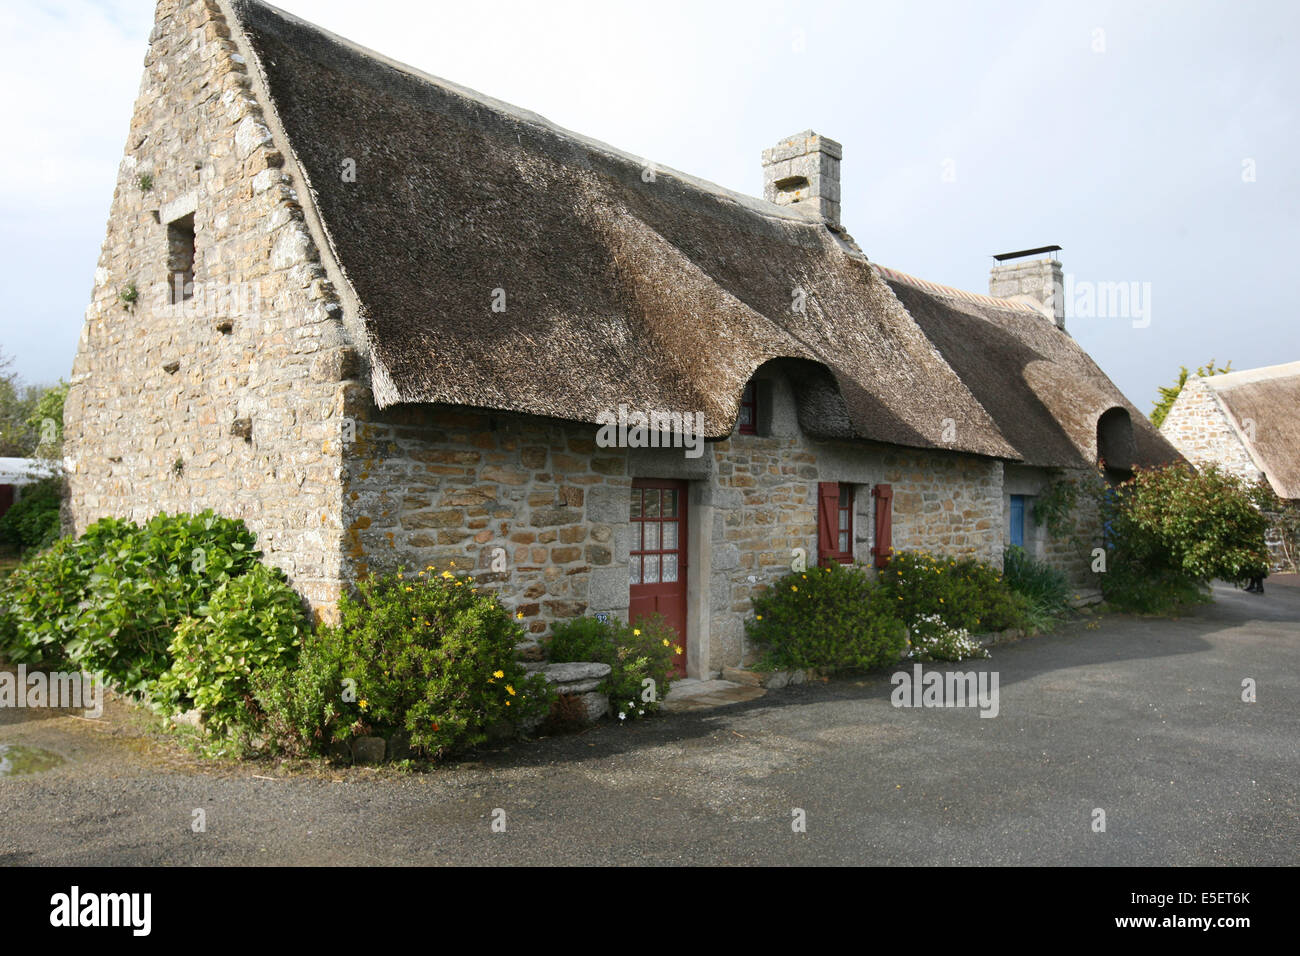 France, Bretagne, finistere sud, cornouaille, nevez, village de chaumieres de Kerascouet, habitat traditionnel, Stock Photo